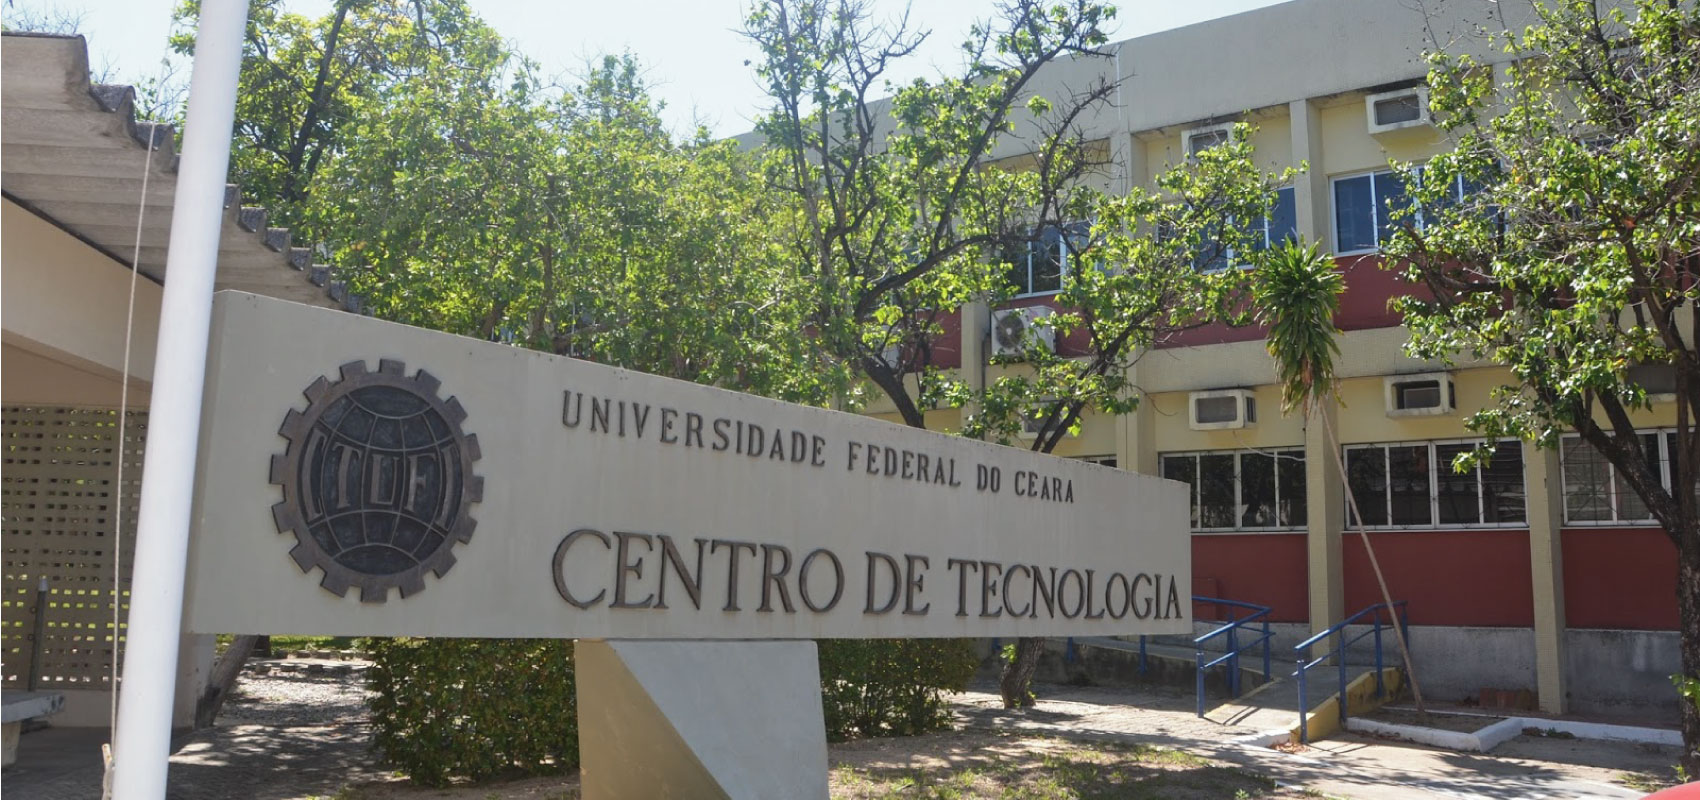 Centro de Tecnologia - Campus do Pici